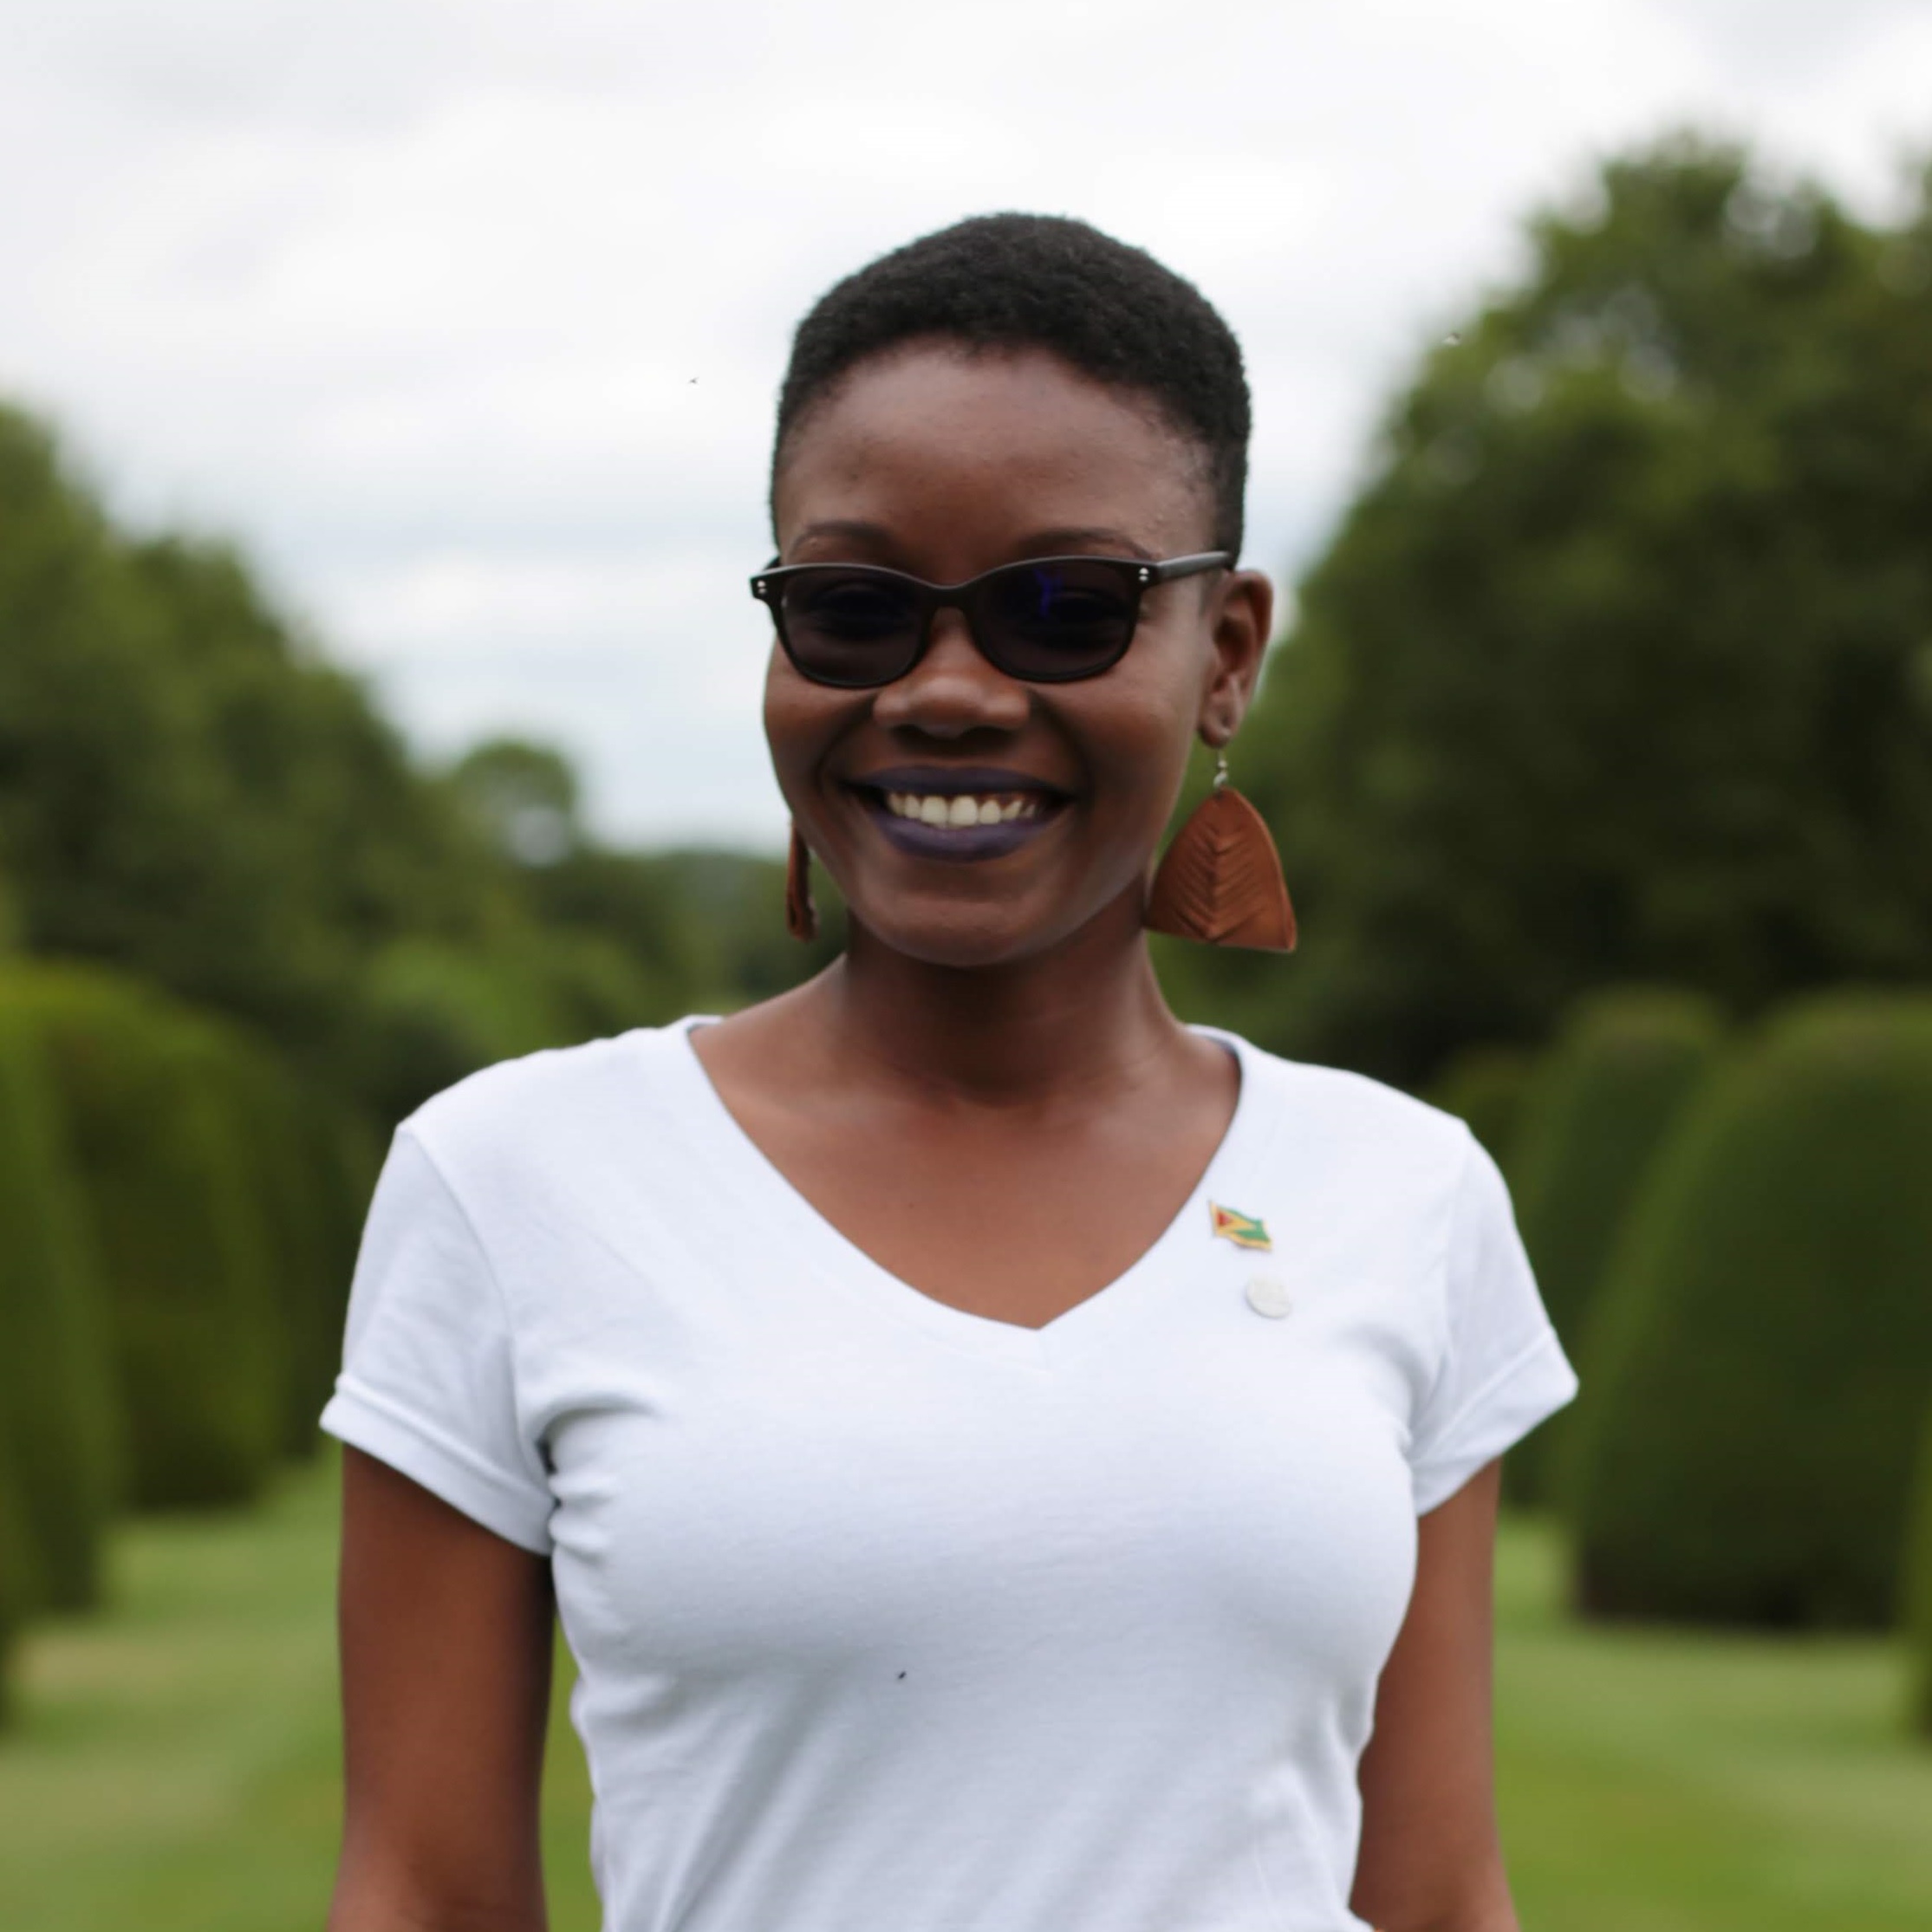 Marva Langevine 2018 Queen's Young Leader from Guyana